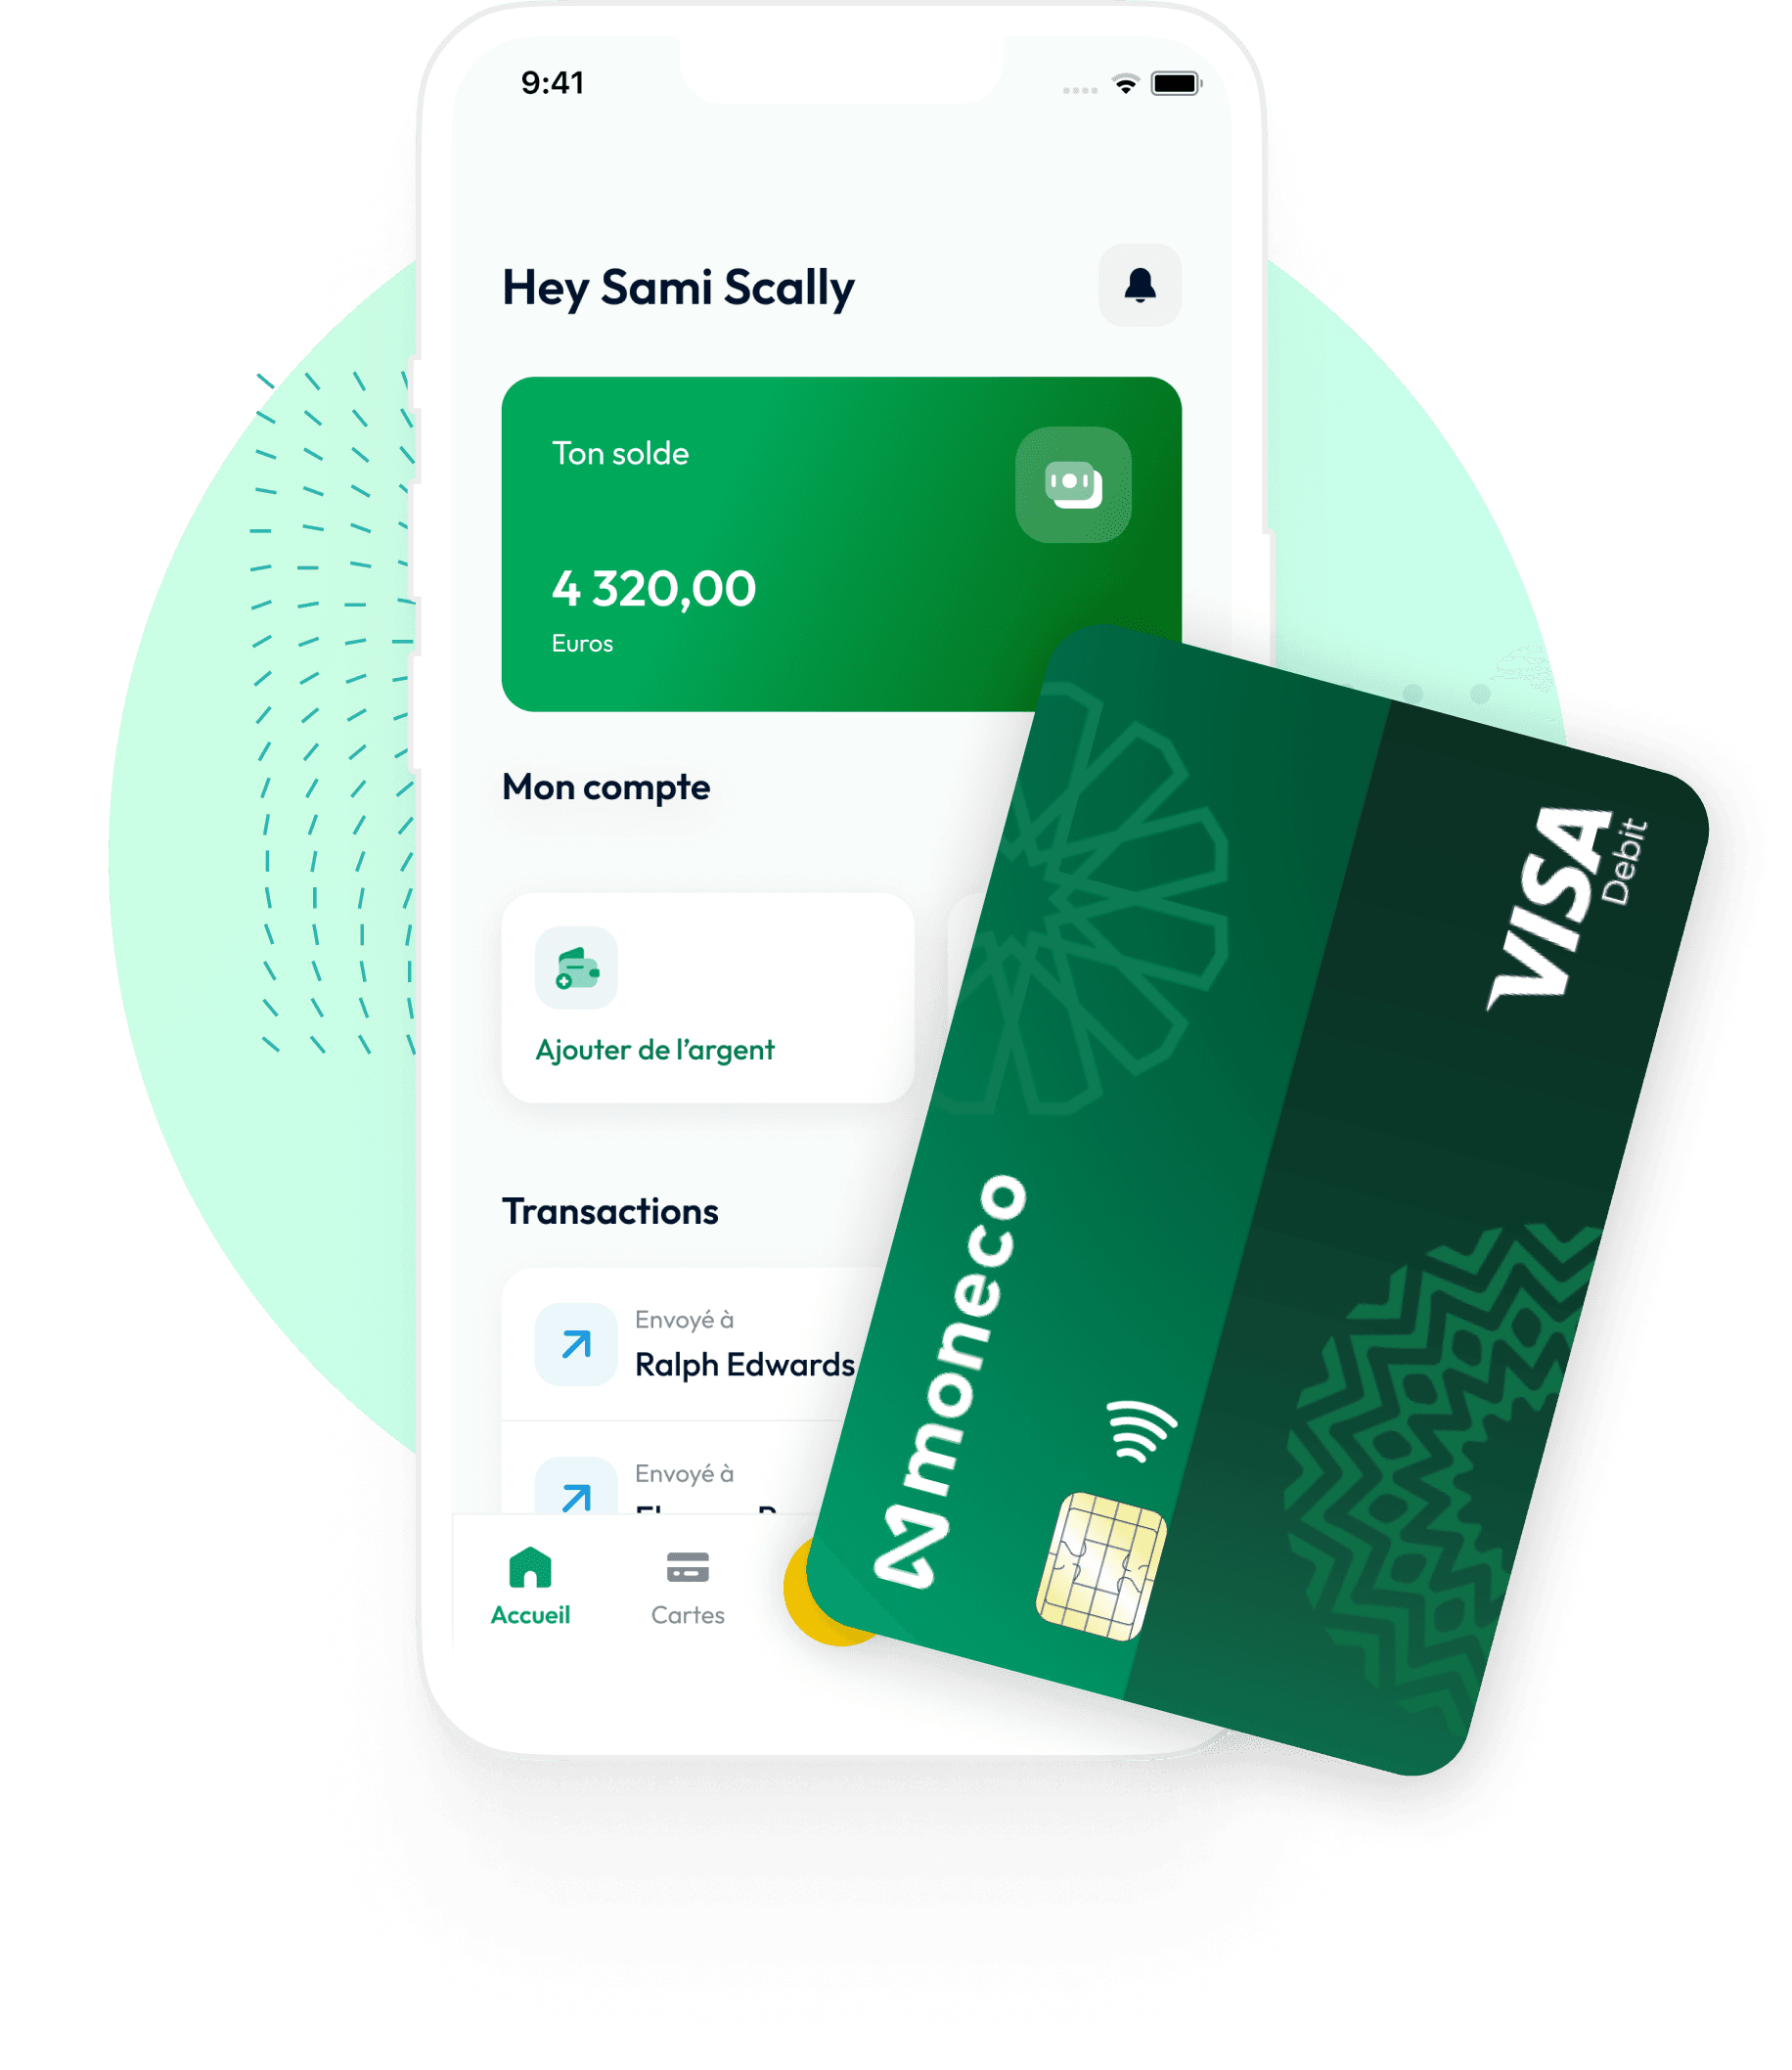 Visa Debit Card on top of Moneco App Render